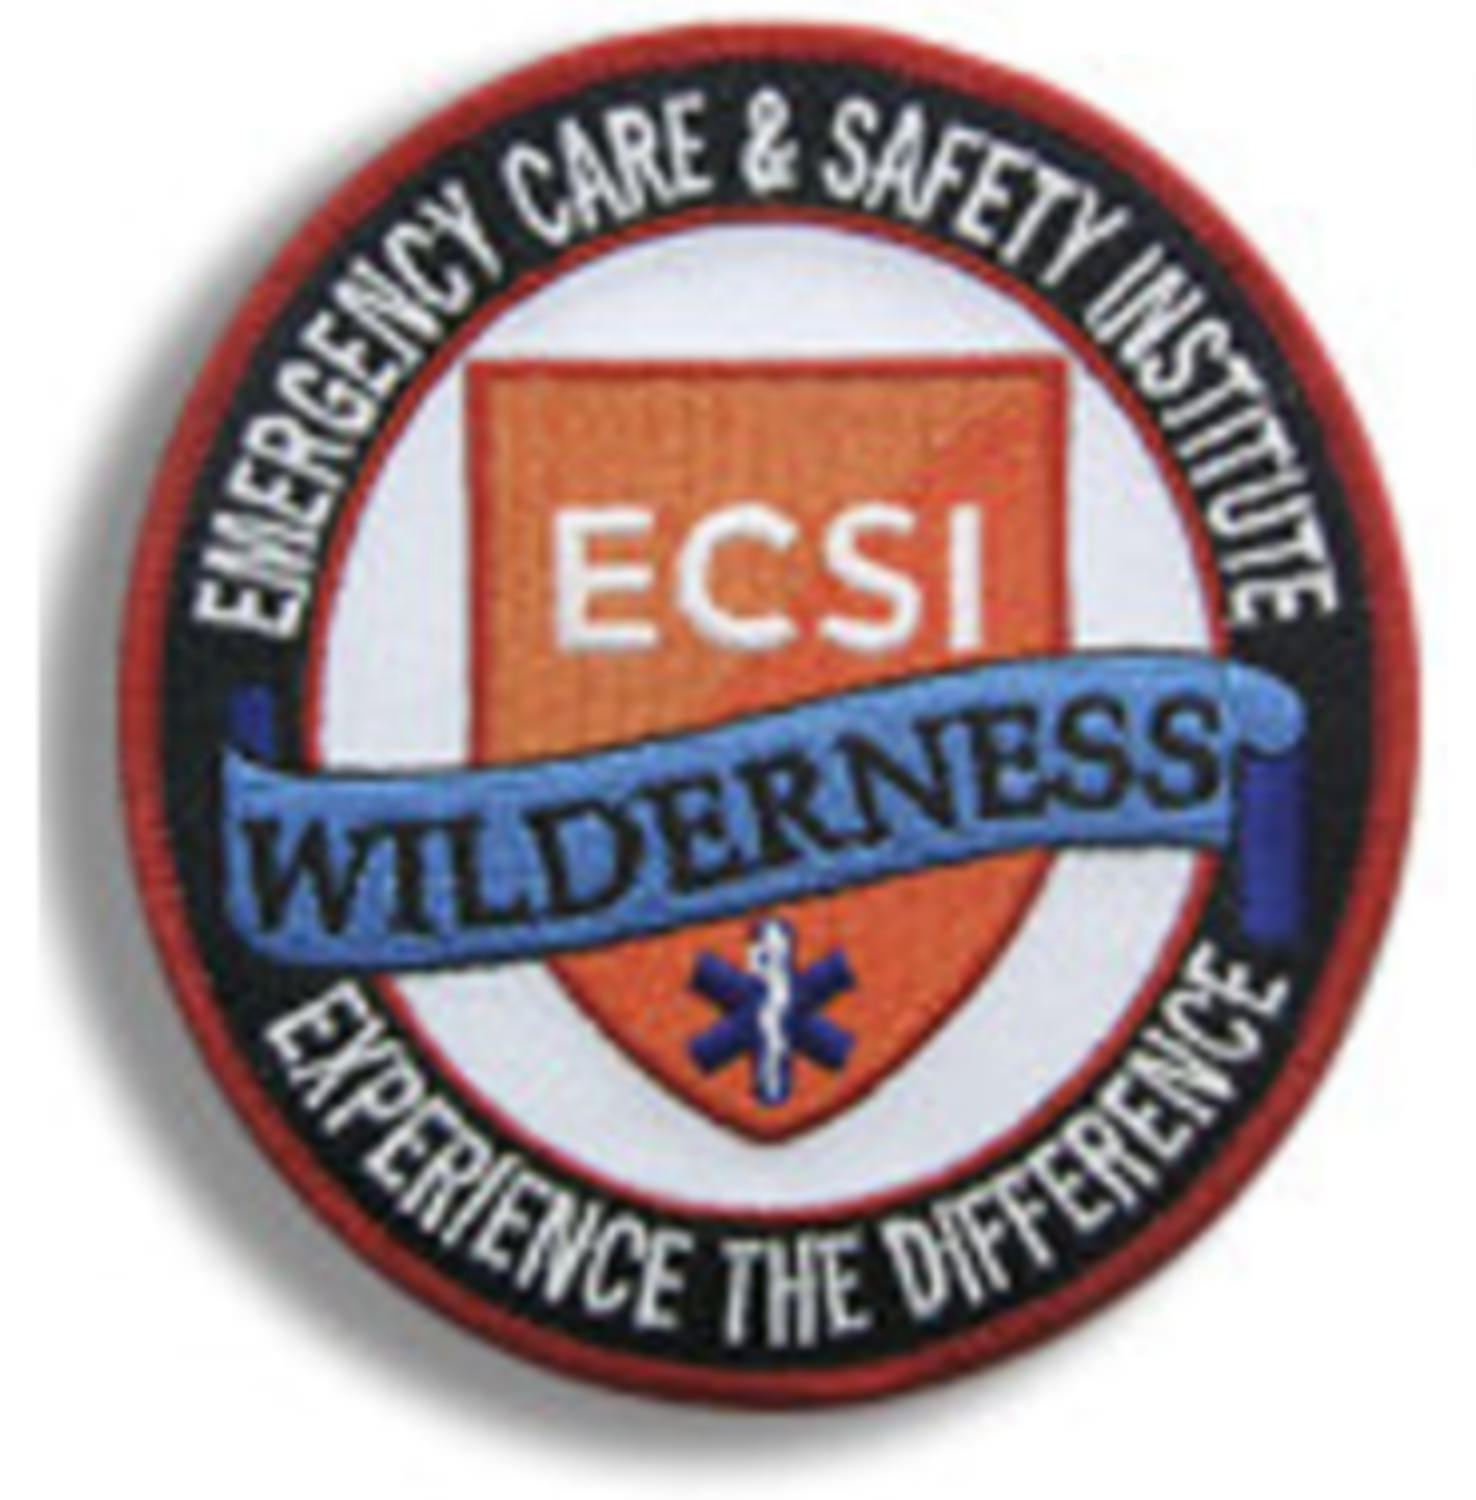 BSA Wilderness First Aid patch